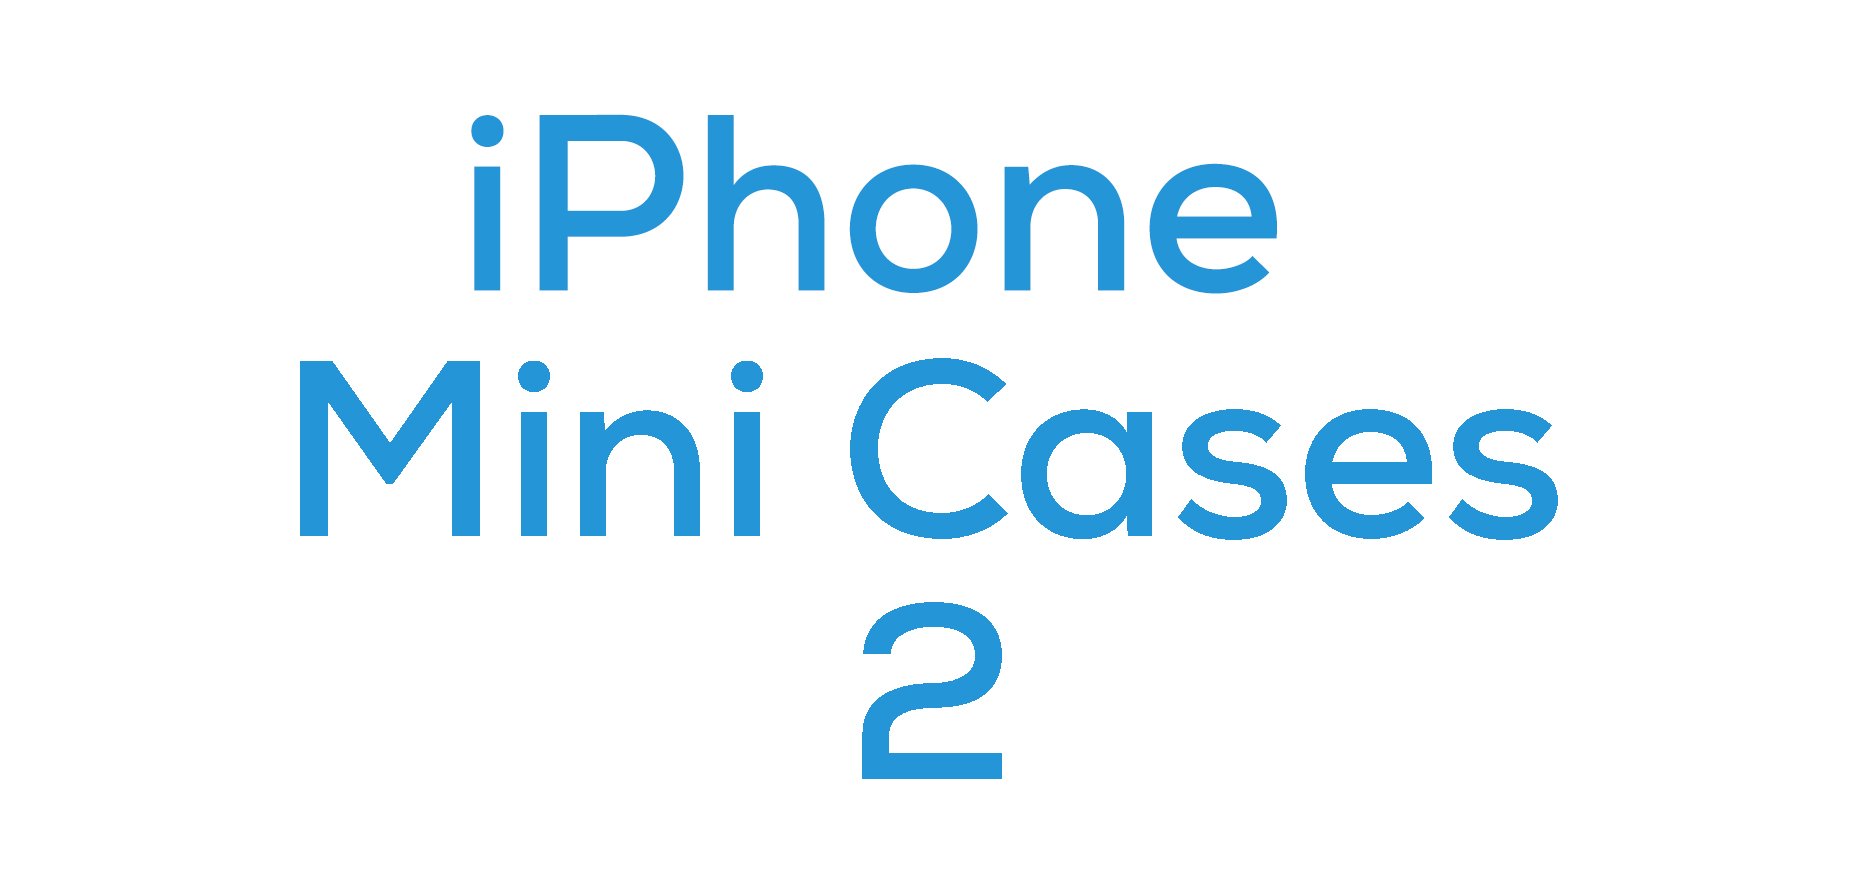 iPhone 12 Mini Cases 2